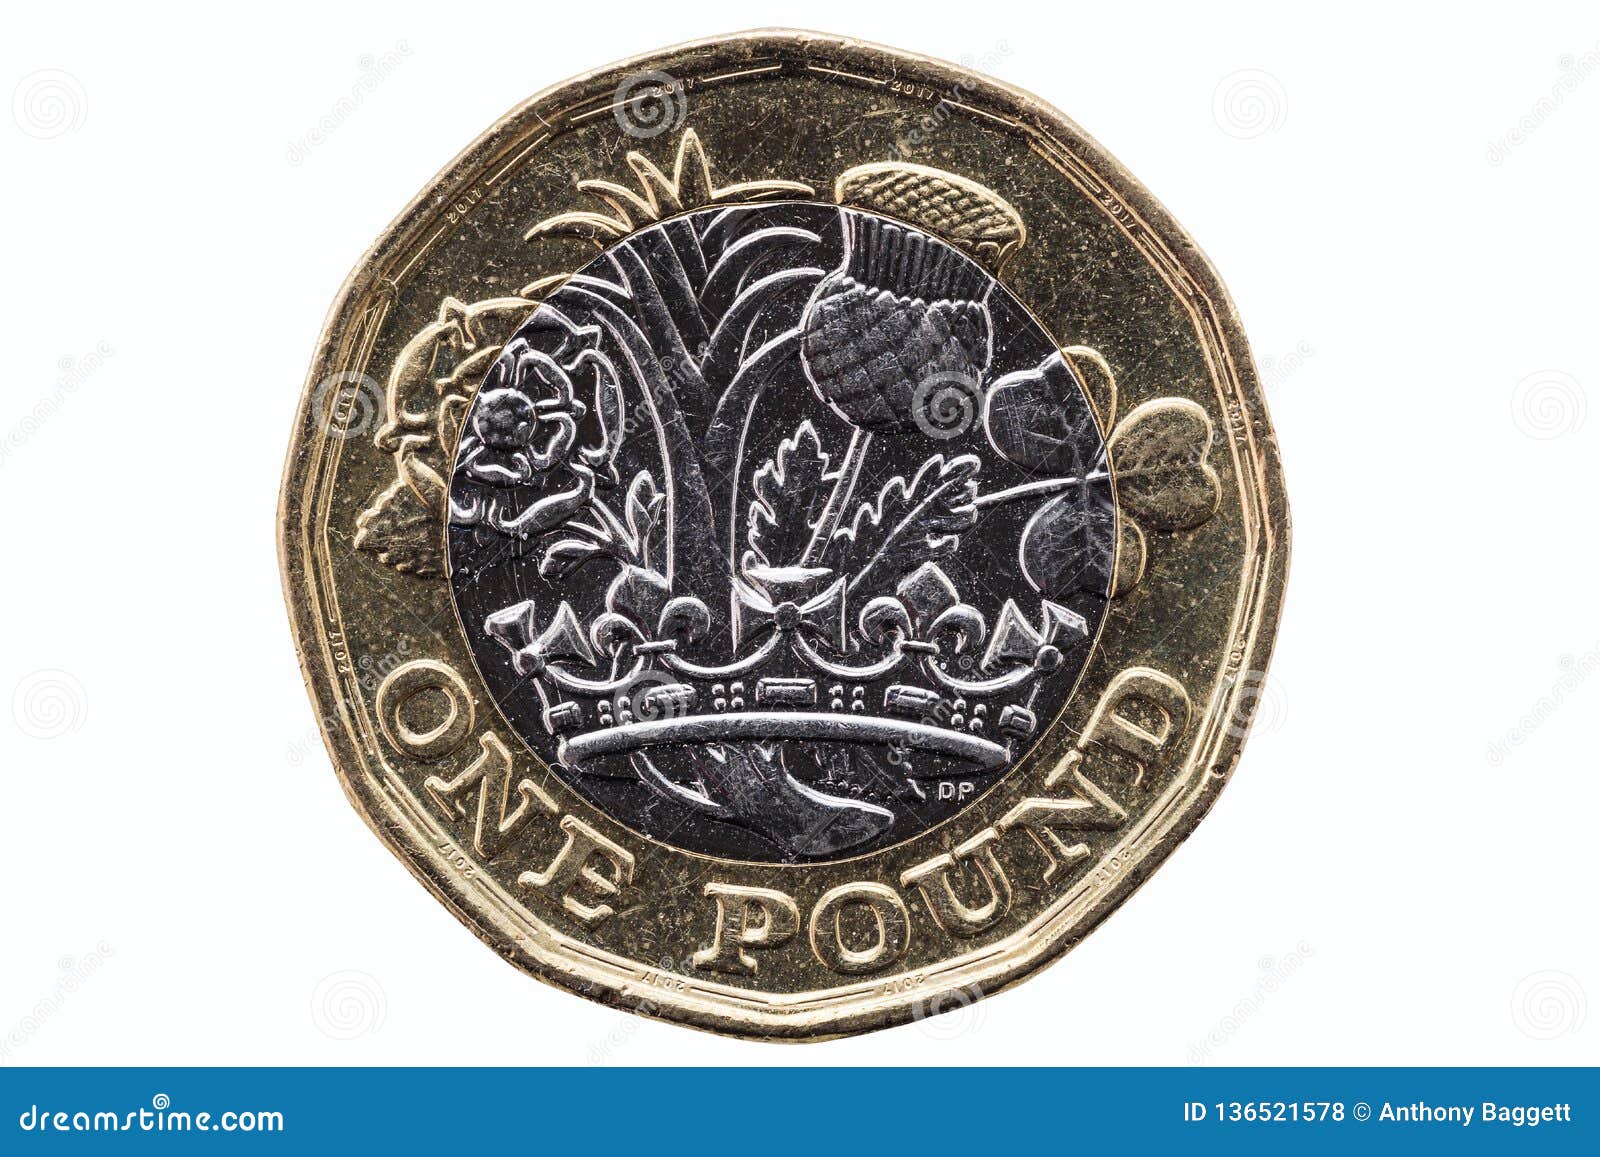 货币英镑硬币图片 - 25H.NET壁纸库